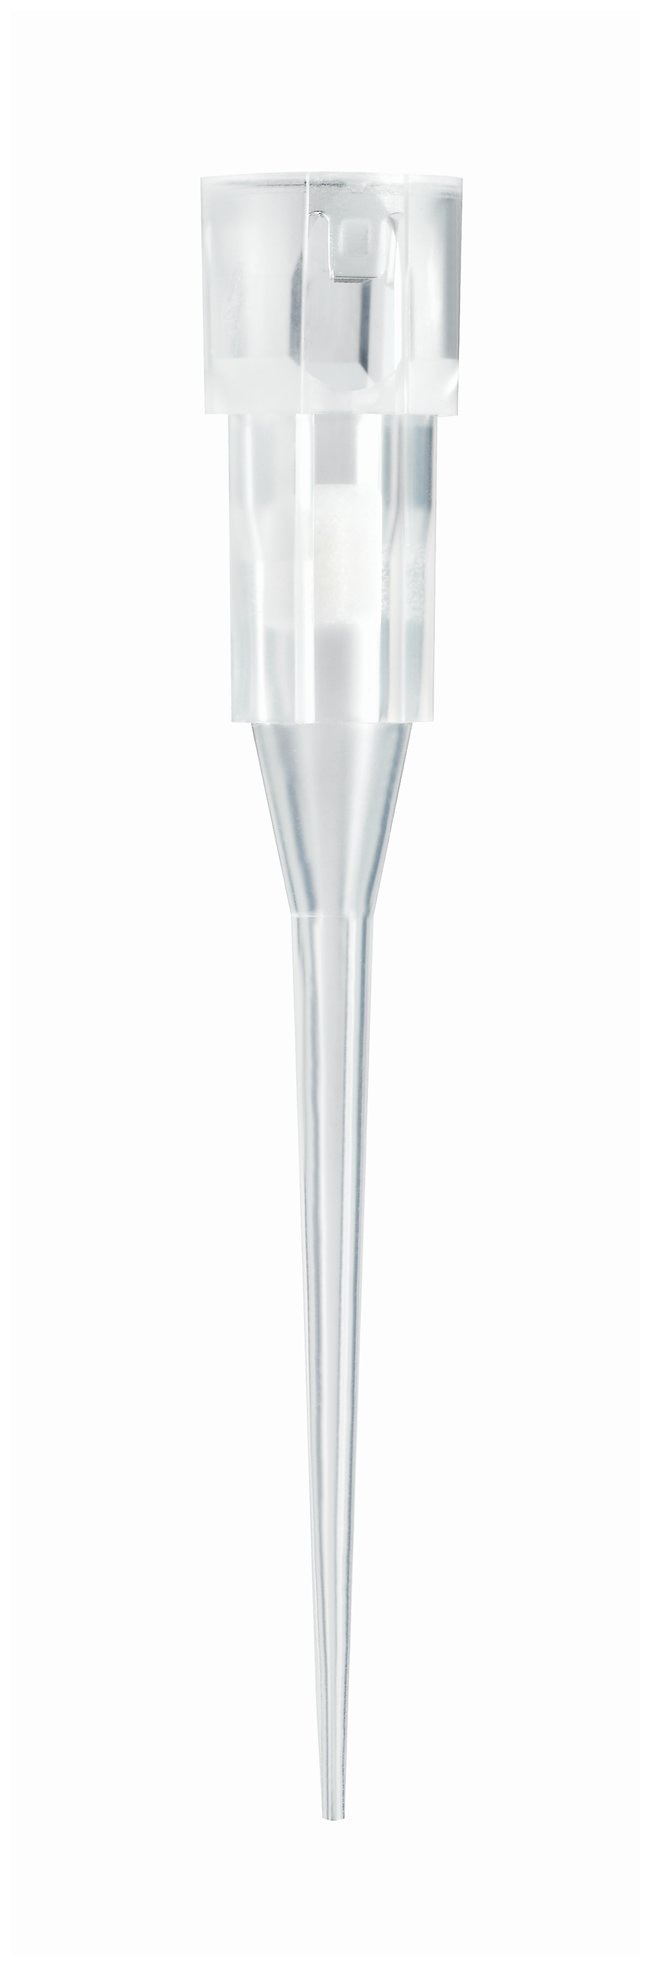 ClipTip™ 非滤芯型移液器吸头（欧盟 IVD/CE 认证）